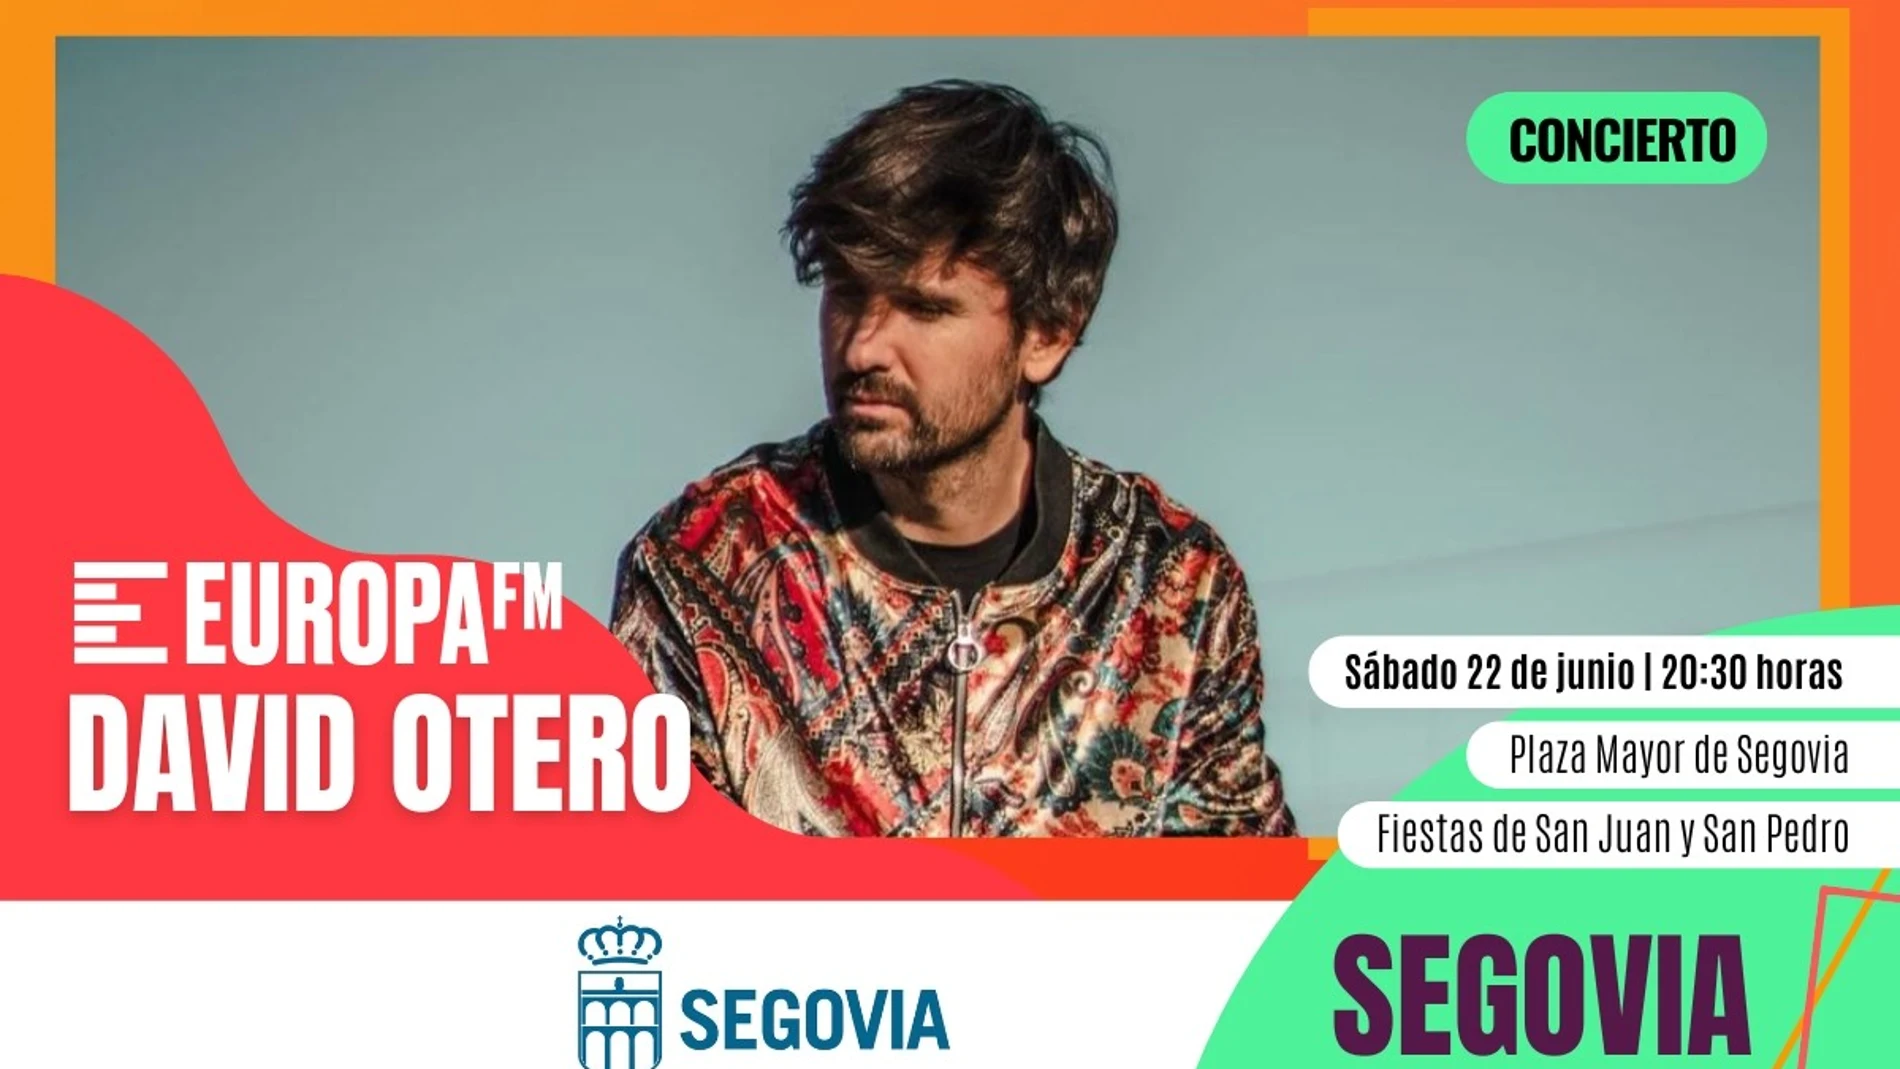 Vive con David Otero un concierto muy especial en la Plaza Mayor de Segovia 